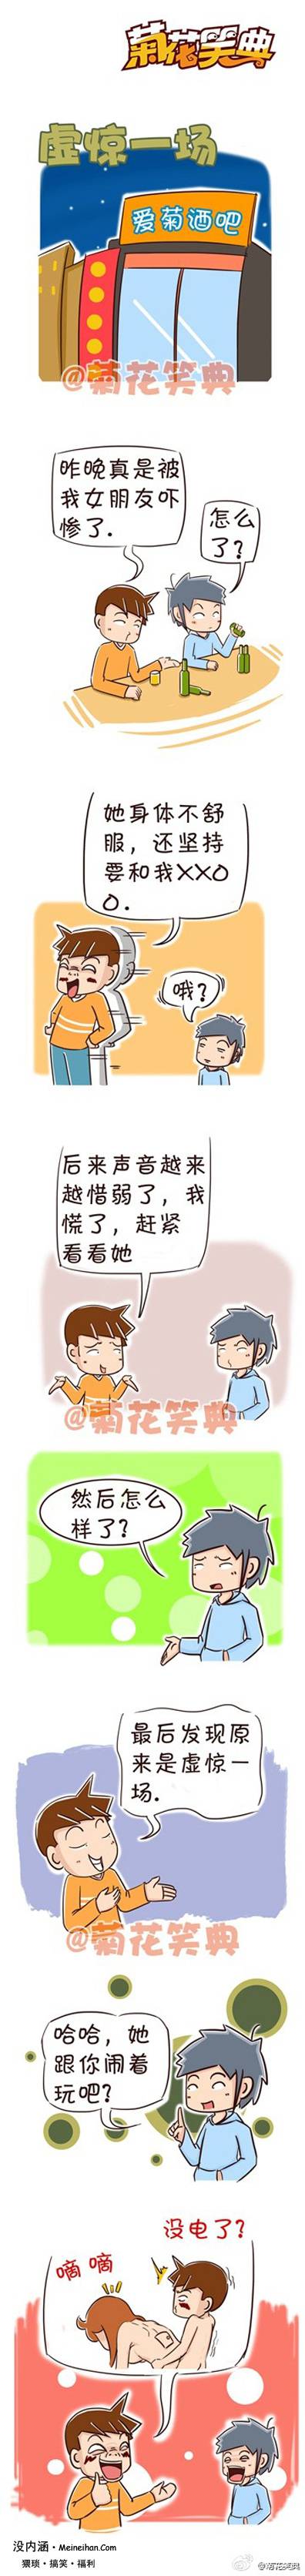 邪恶漫画爆笑囧图第158刊：惩罚